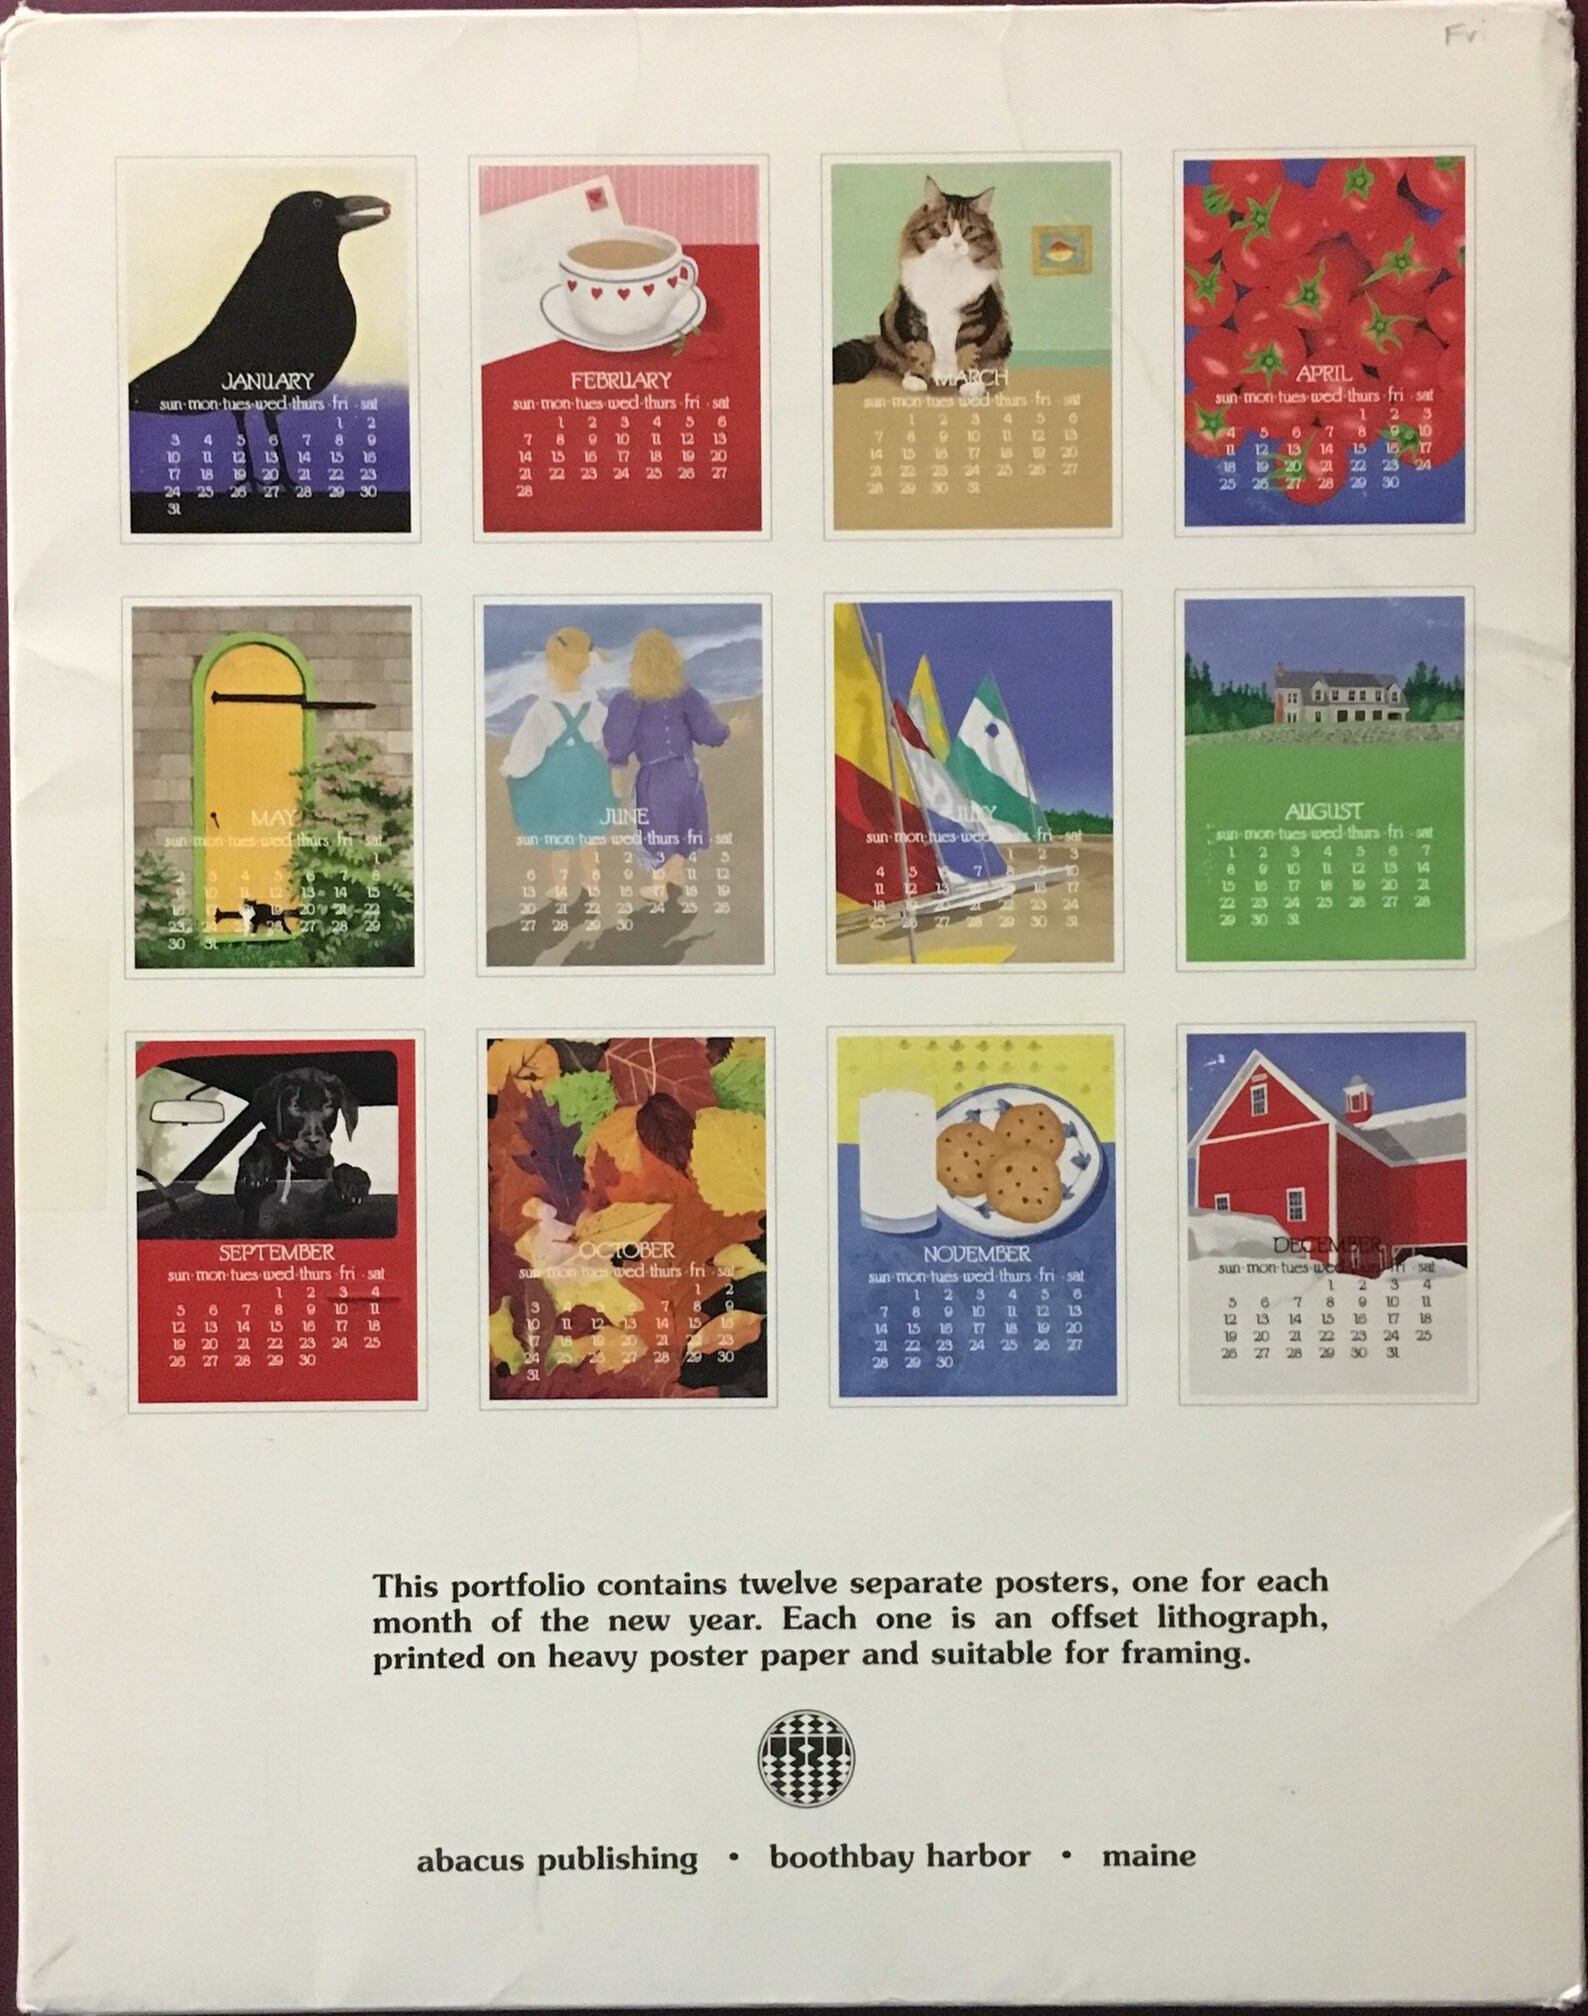 The 1999 Abacus Calendar by Dana Heacock. Etsy